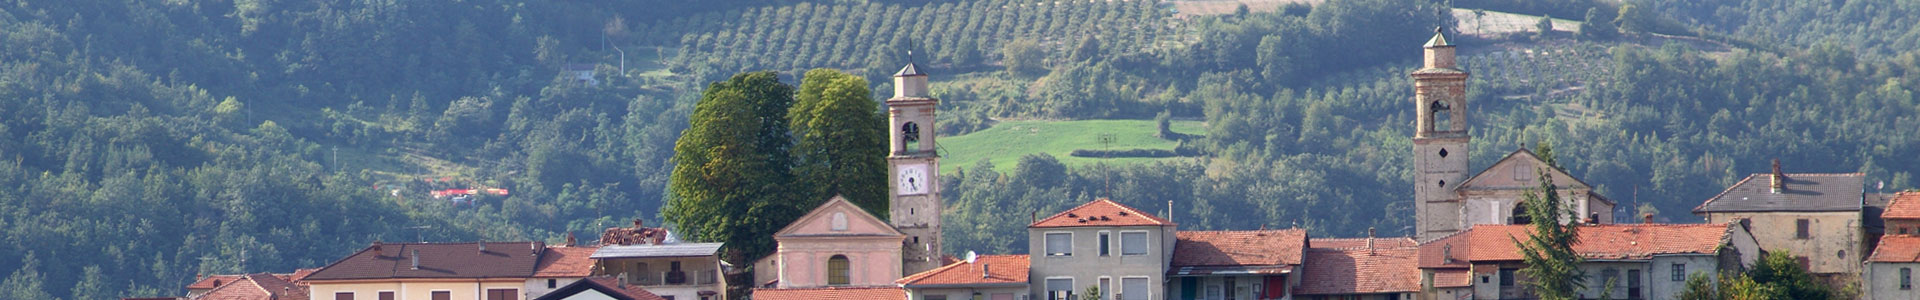 San Benedetto Belbo